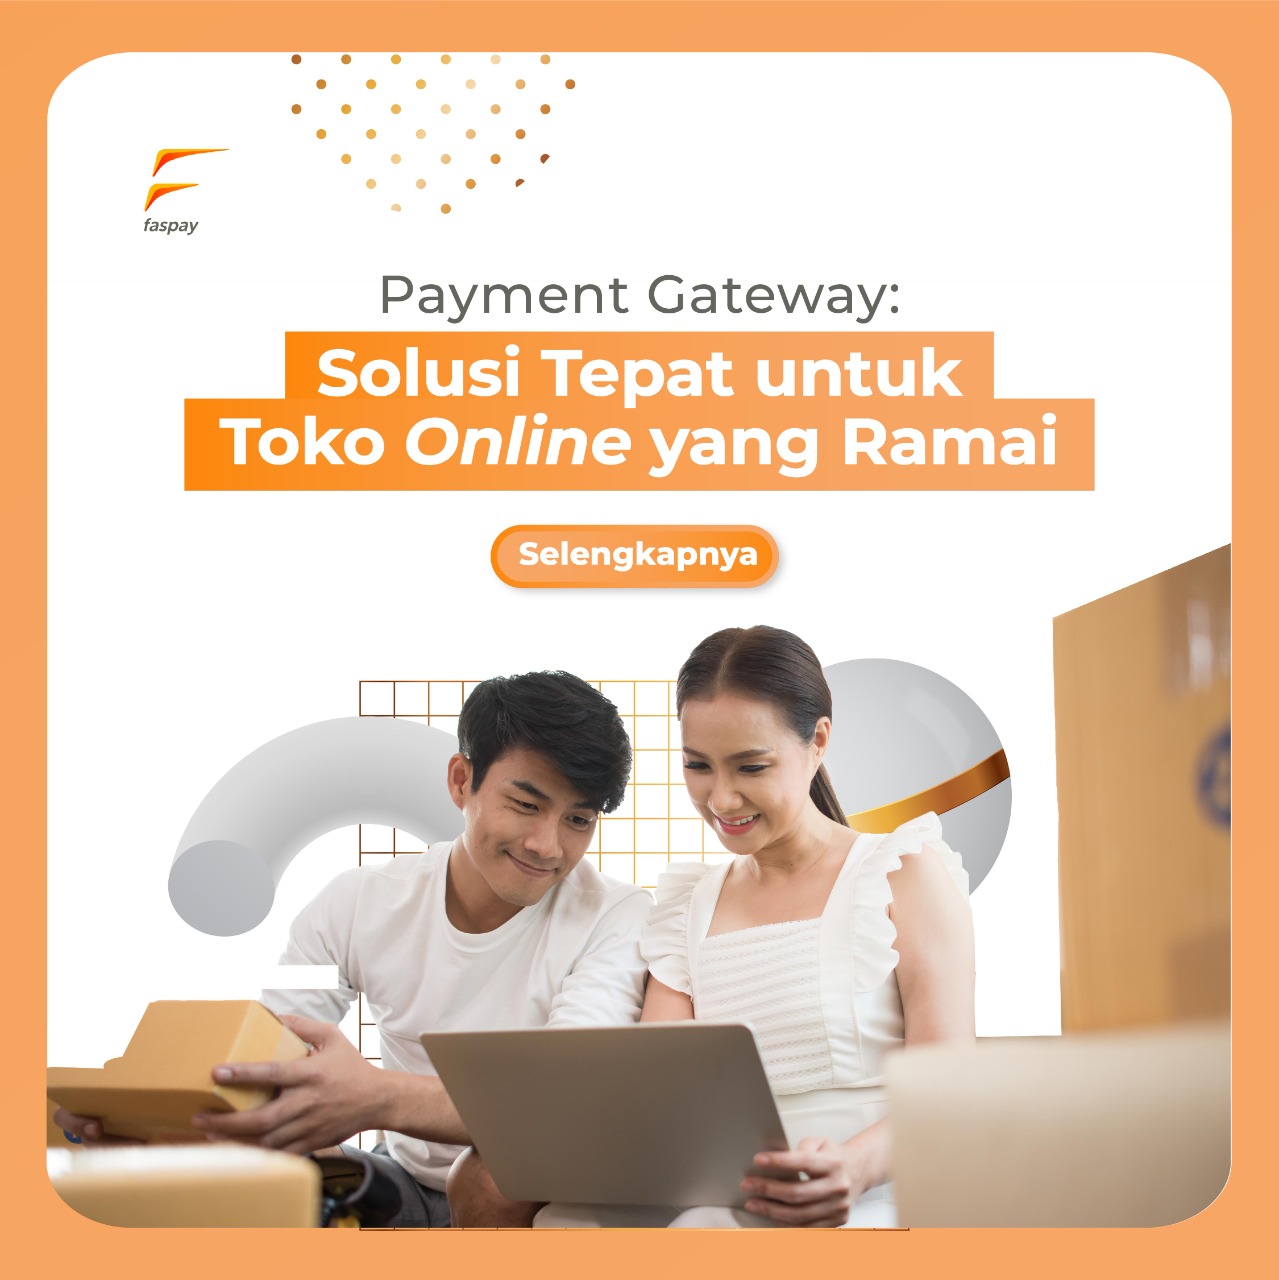 Payment Gateway: Solusi Tepat untuk Toko Online yang Ramai